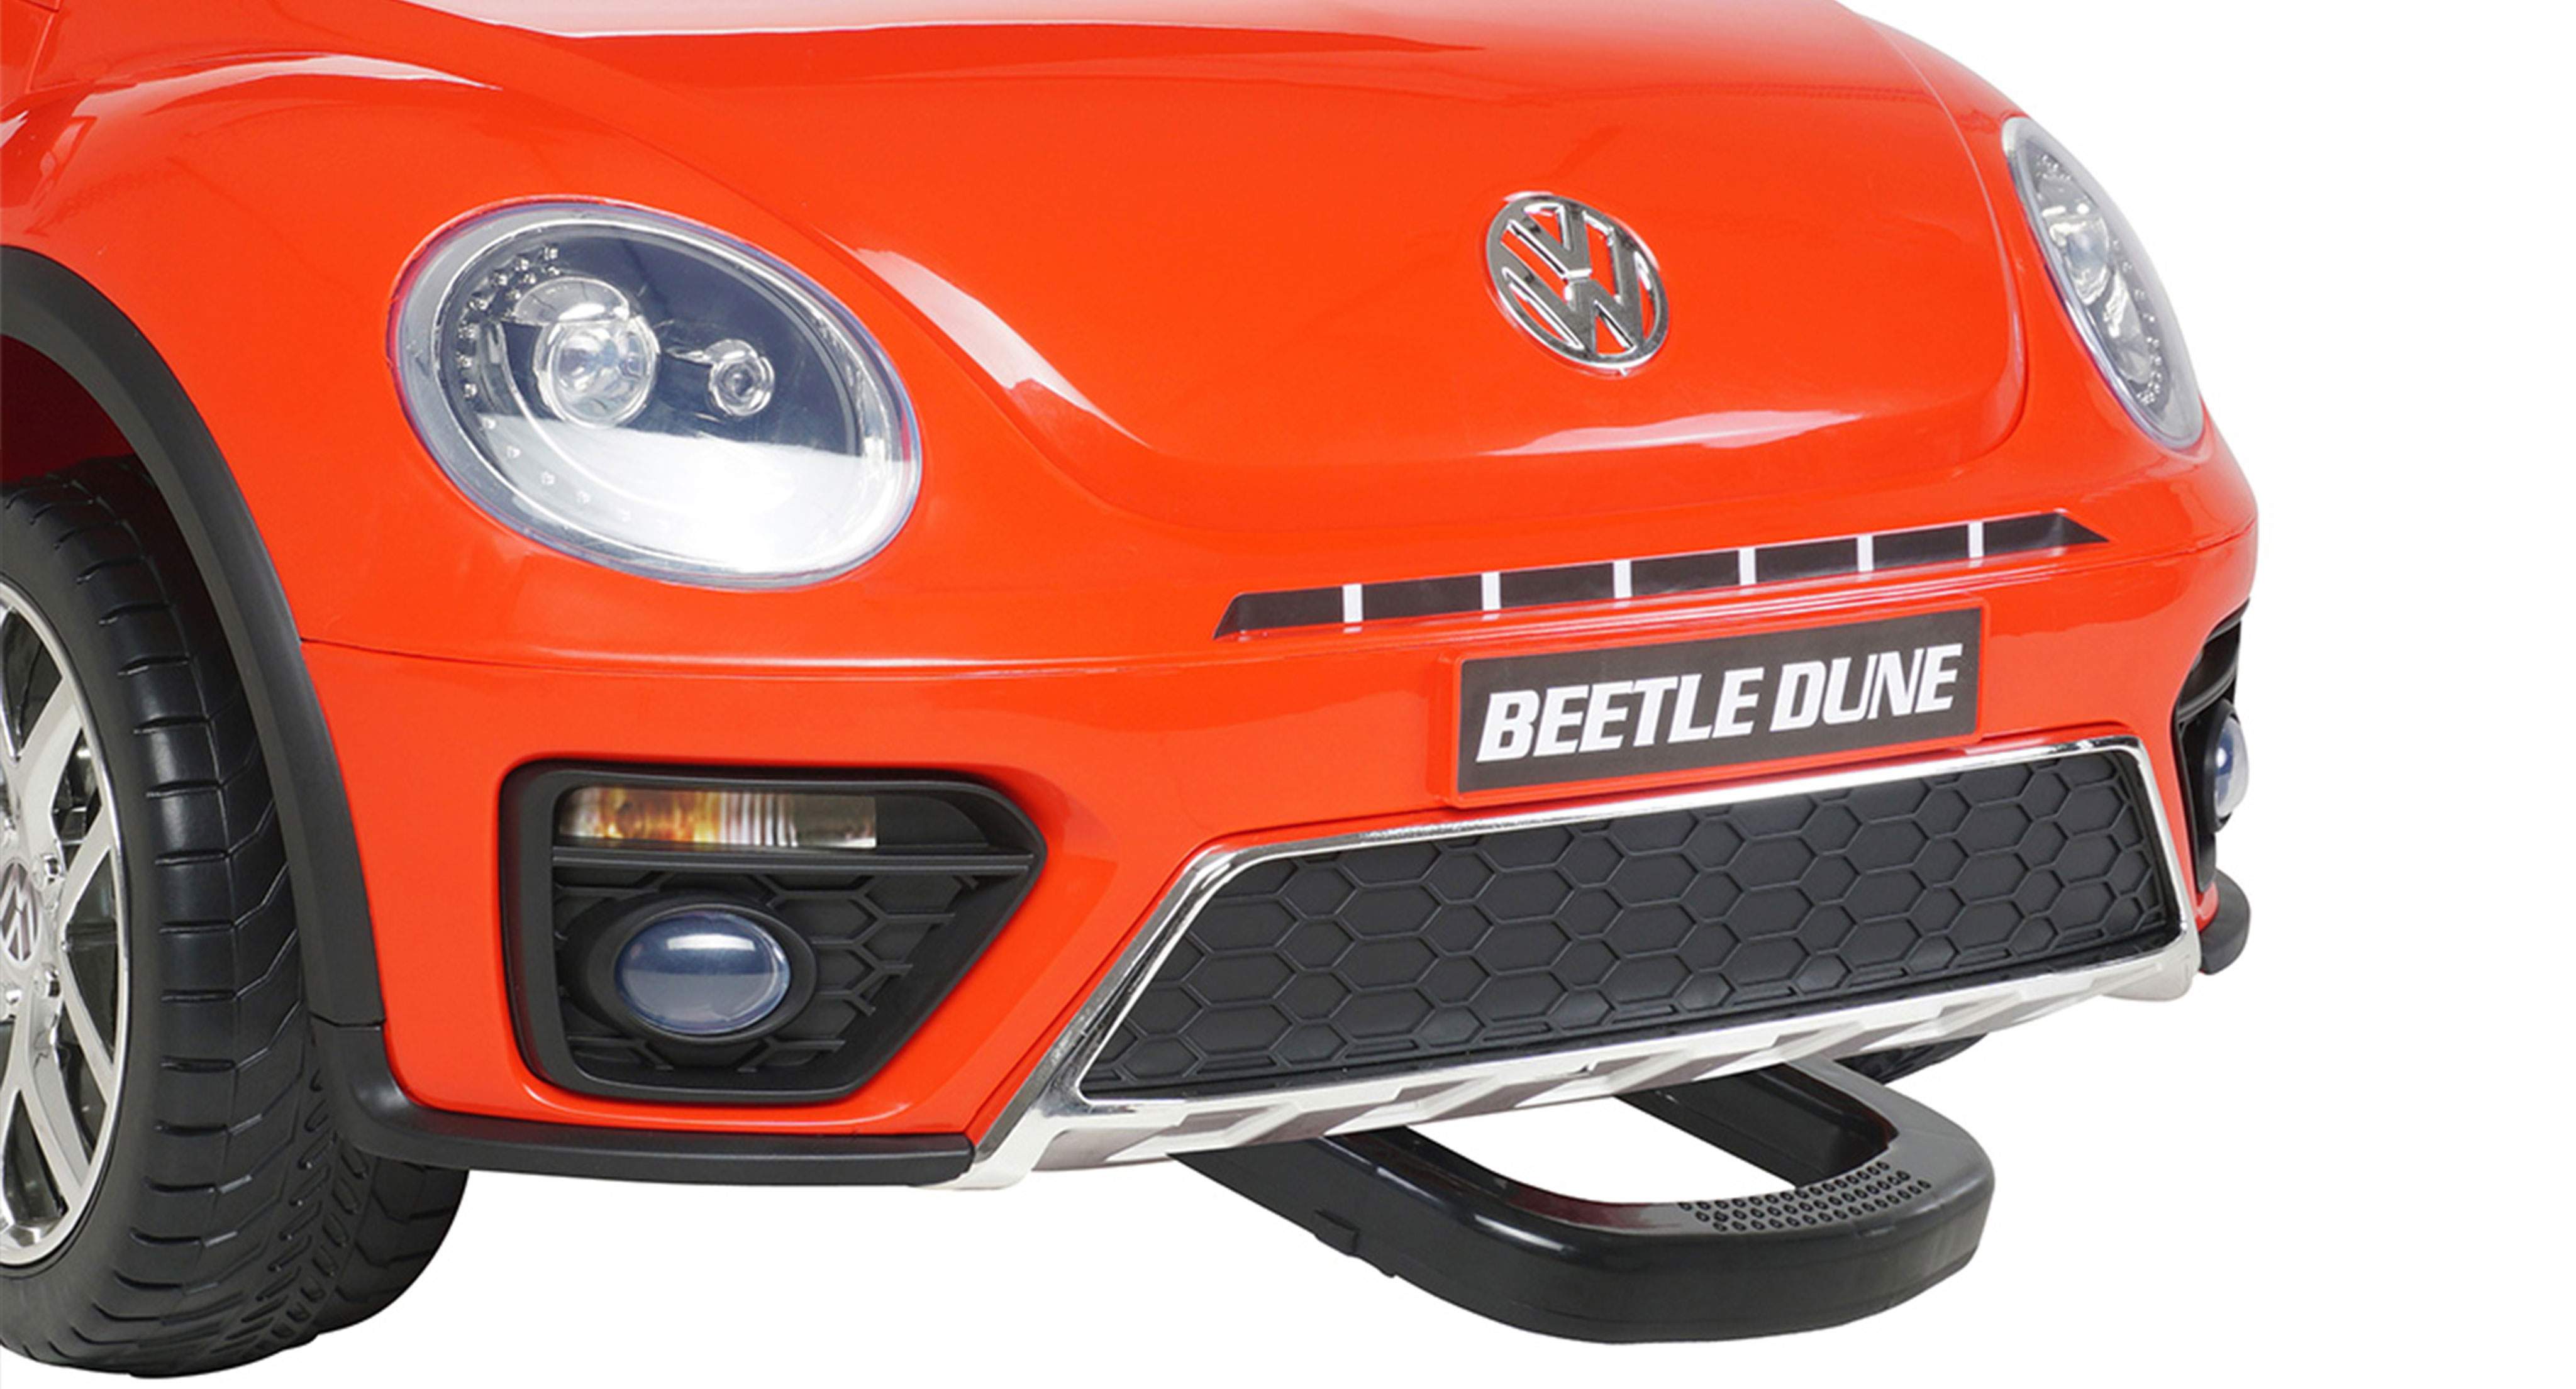 VW Beetle Lizenziert